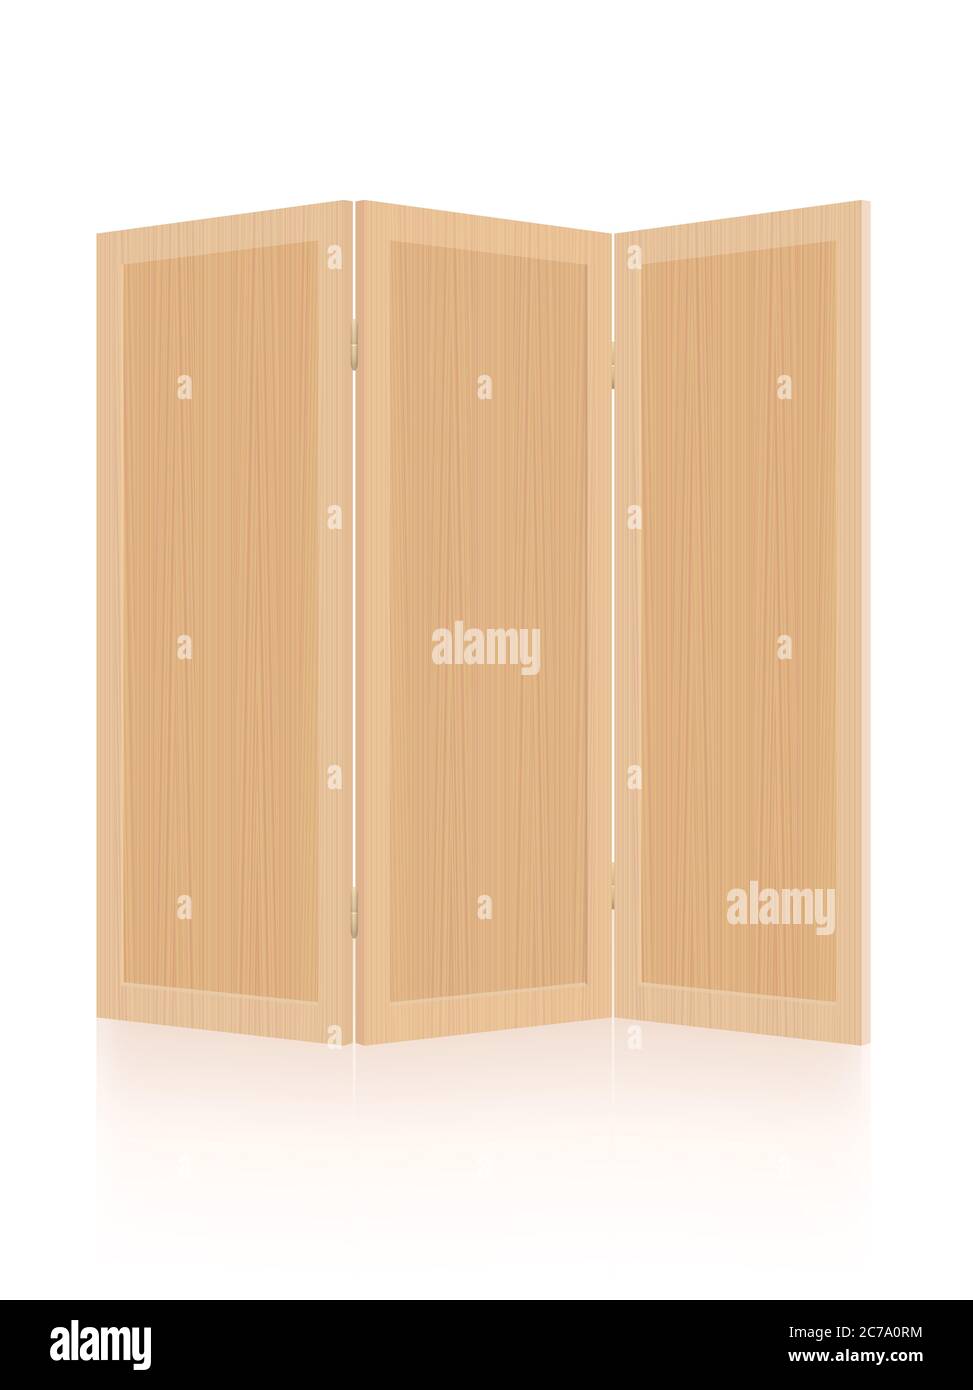 Holzteiler, Klappwand, Trennwand - faltbar, mobil, moderne dreiteilige  Inneneinrichtung - Illustration auf weißem Hintergrund Stockfotografie -  Alamy